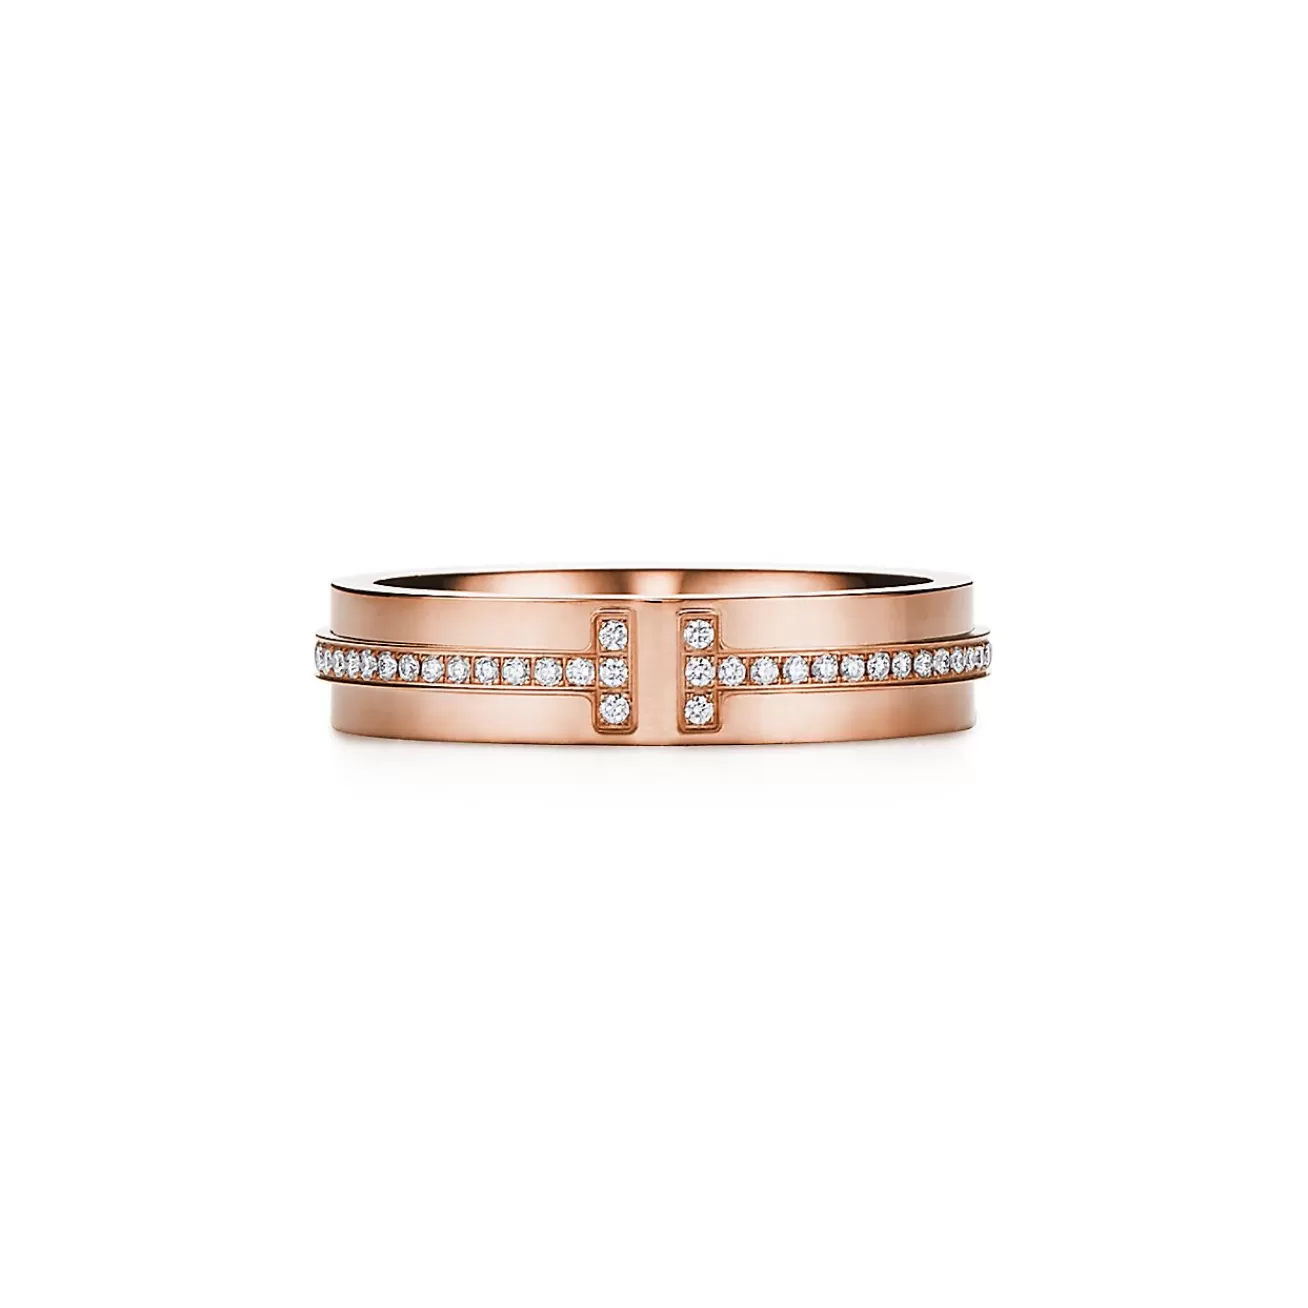 Tiffany & Co. Tiffany T narrow diamond ring in 18k rose gold, 4.5 mm wide. | ^Women Rings | Men's Jewelry